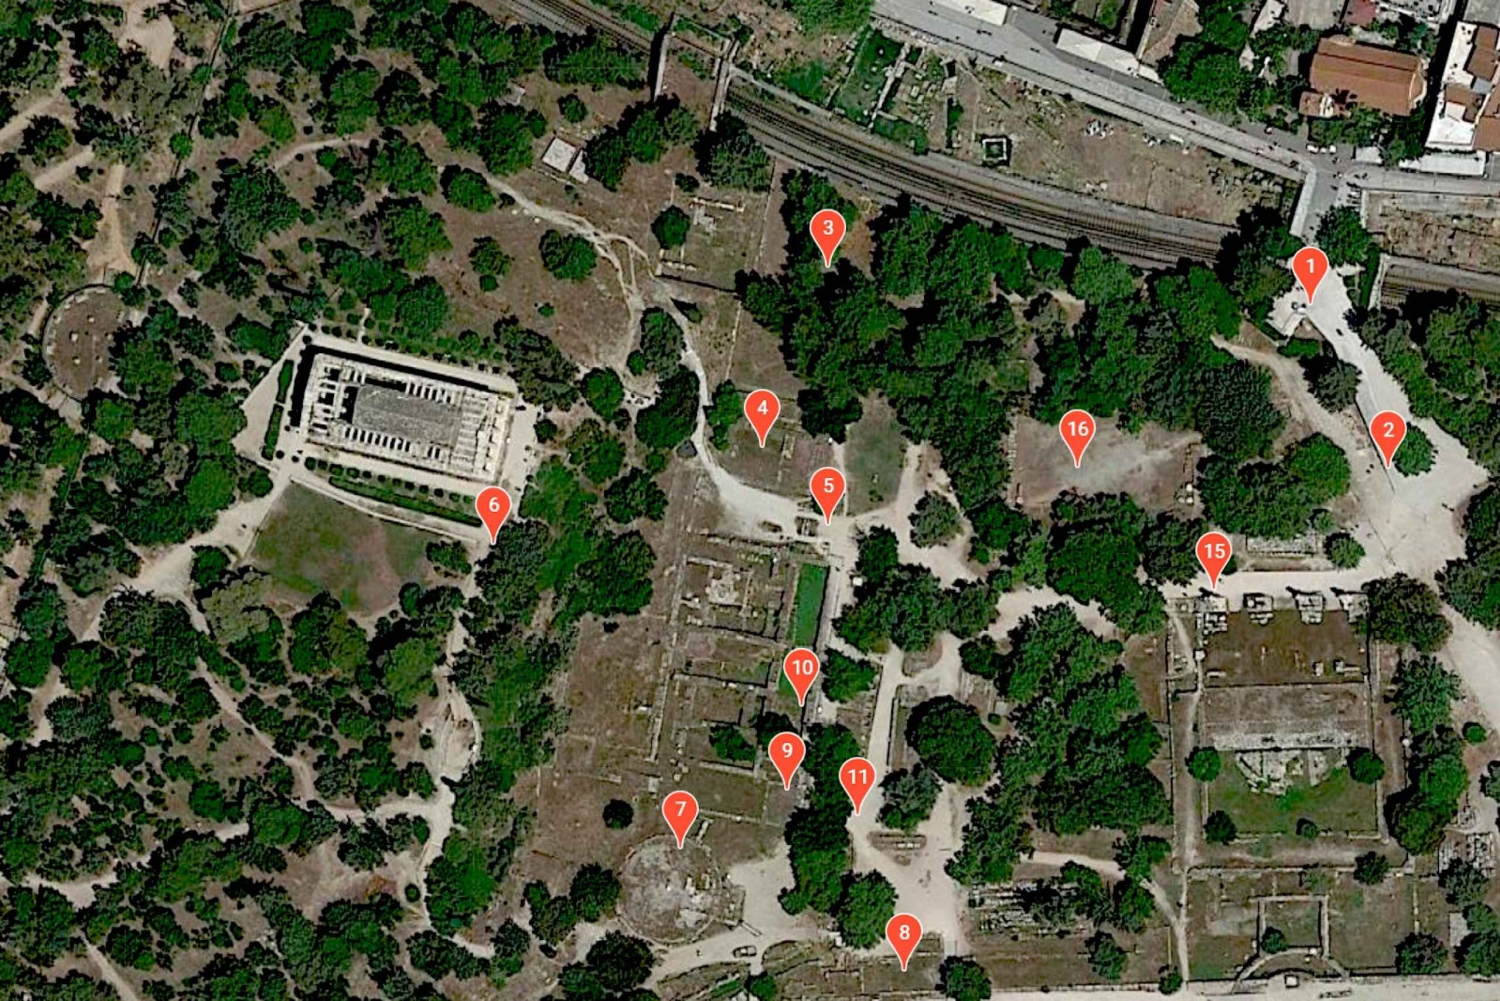 Aten: Självguidad virtuell rundtur på den antika Agora